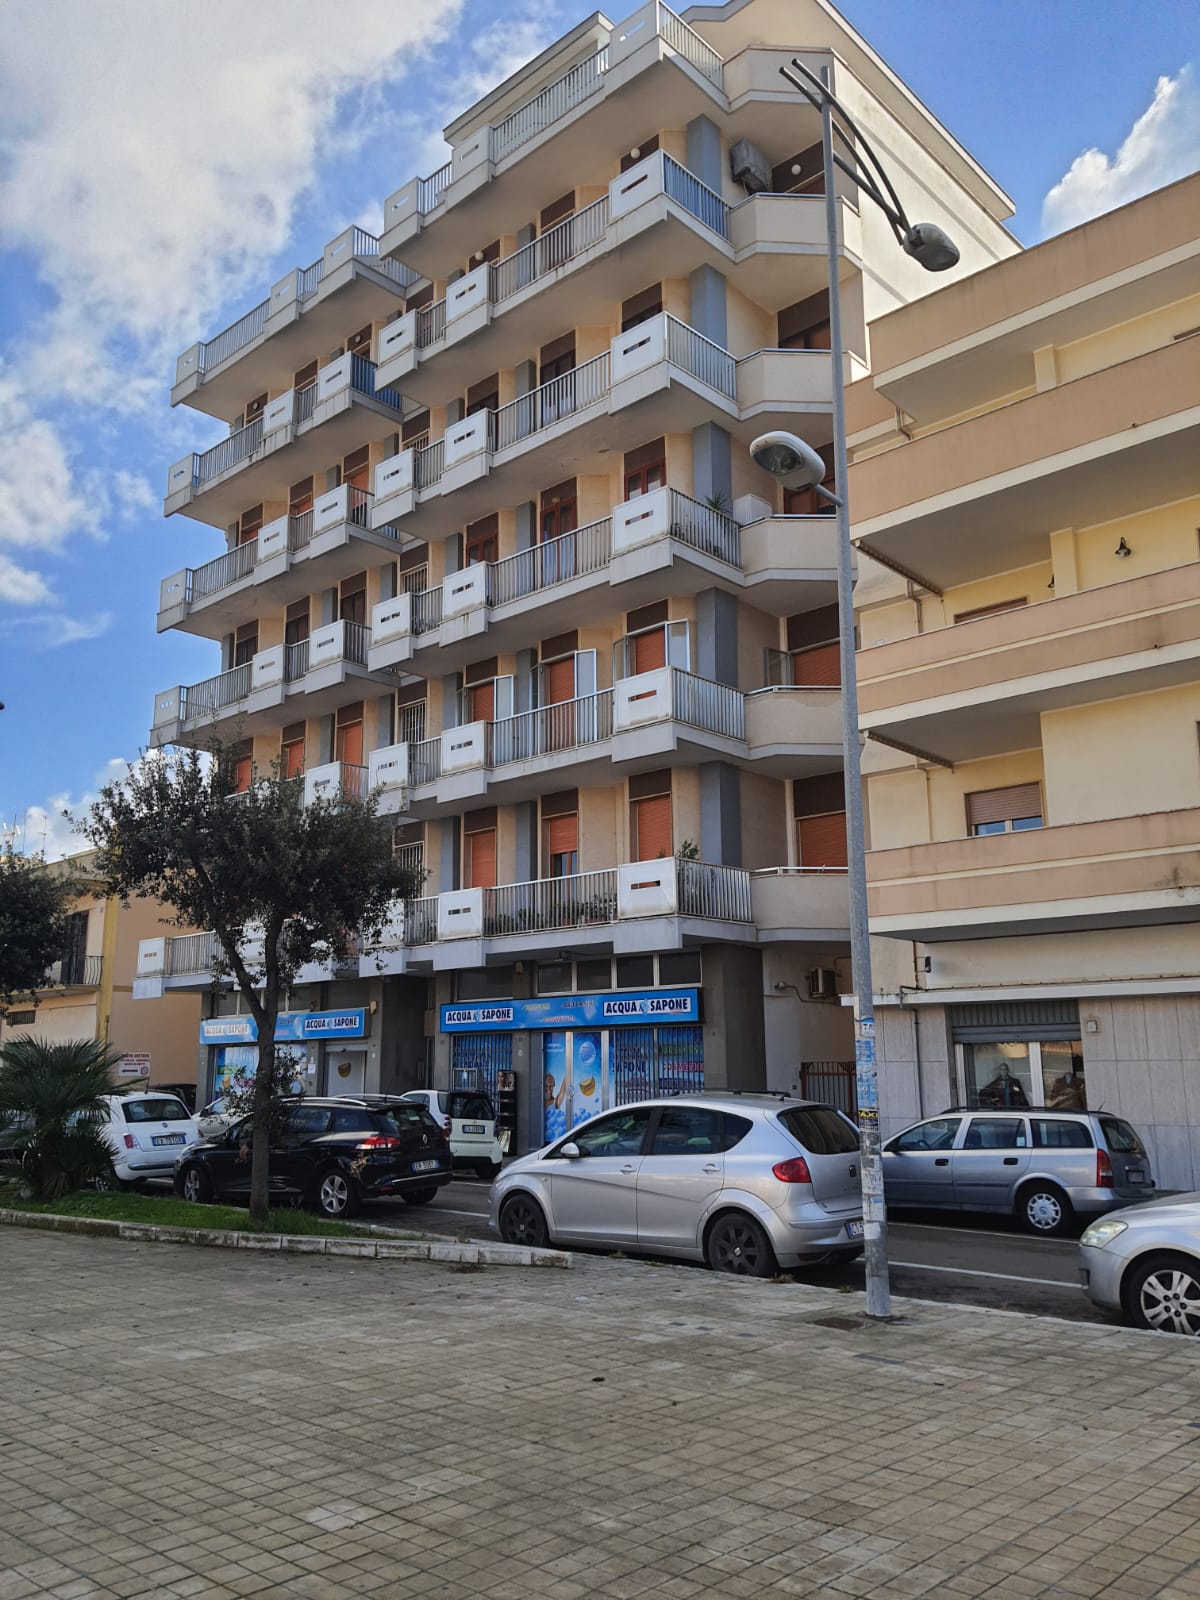 Appartamento in zona centrale a due passi da corso roma